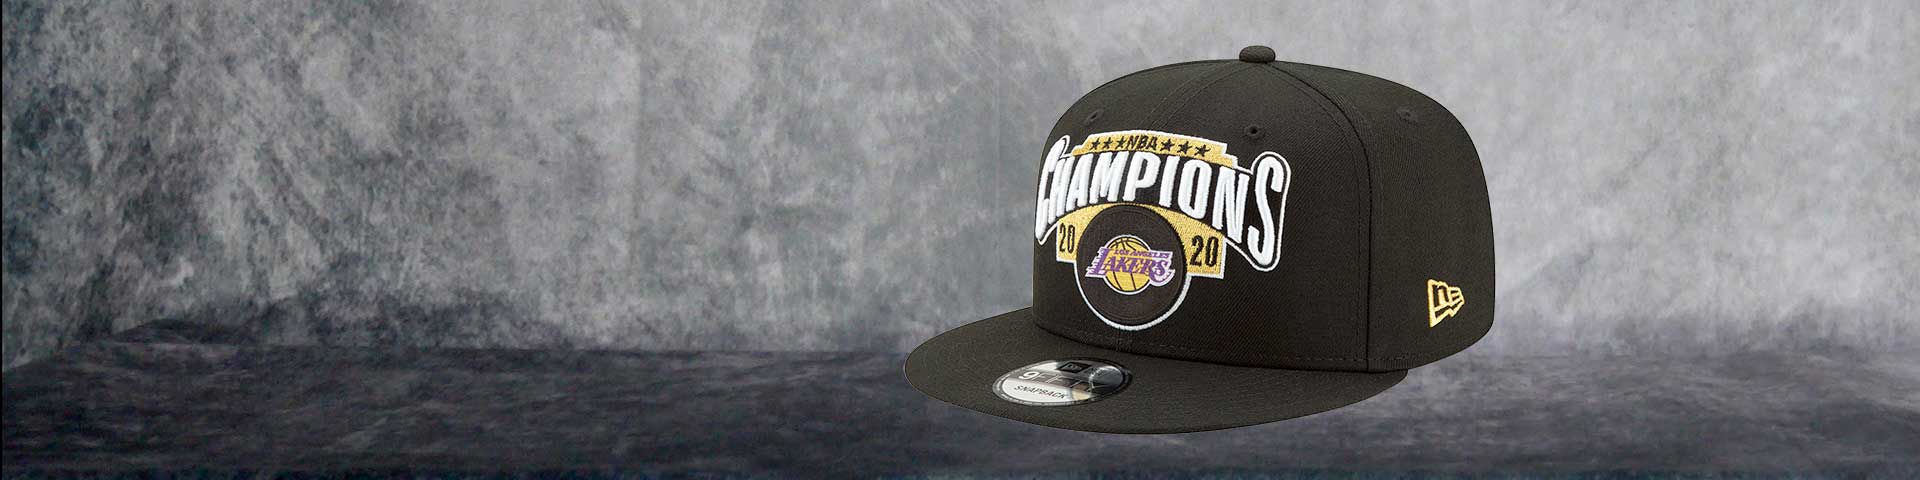 Los Angeles Lakers campeones NBA 2020. Gorra de campeones. Venta online España. Basketspirit.com